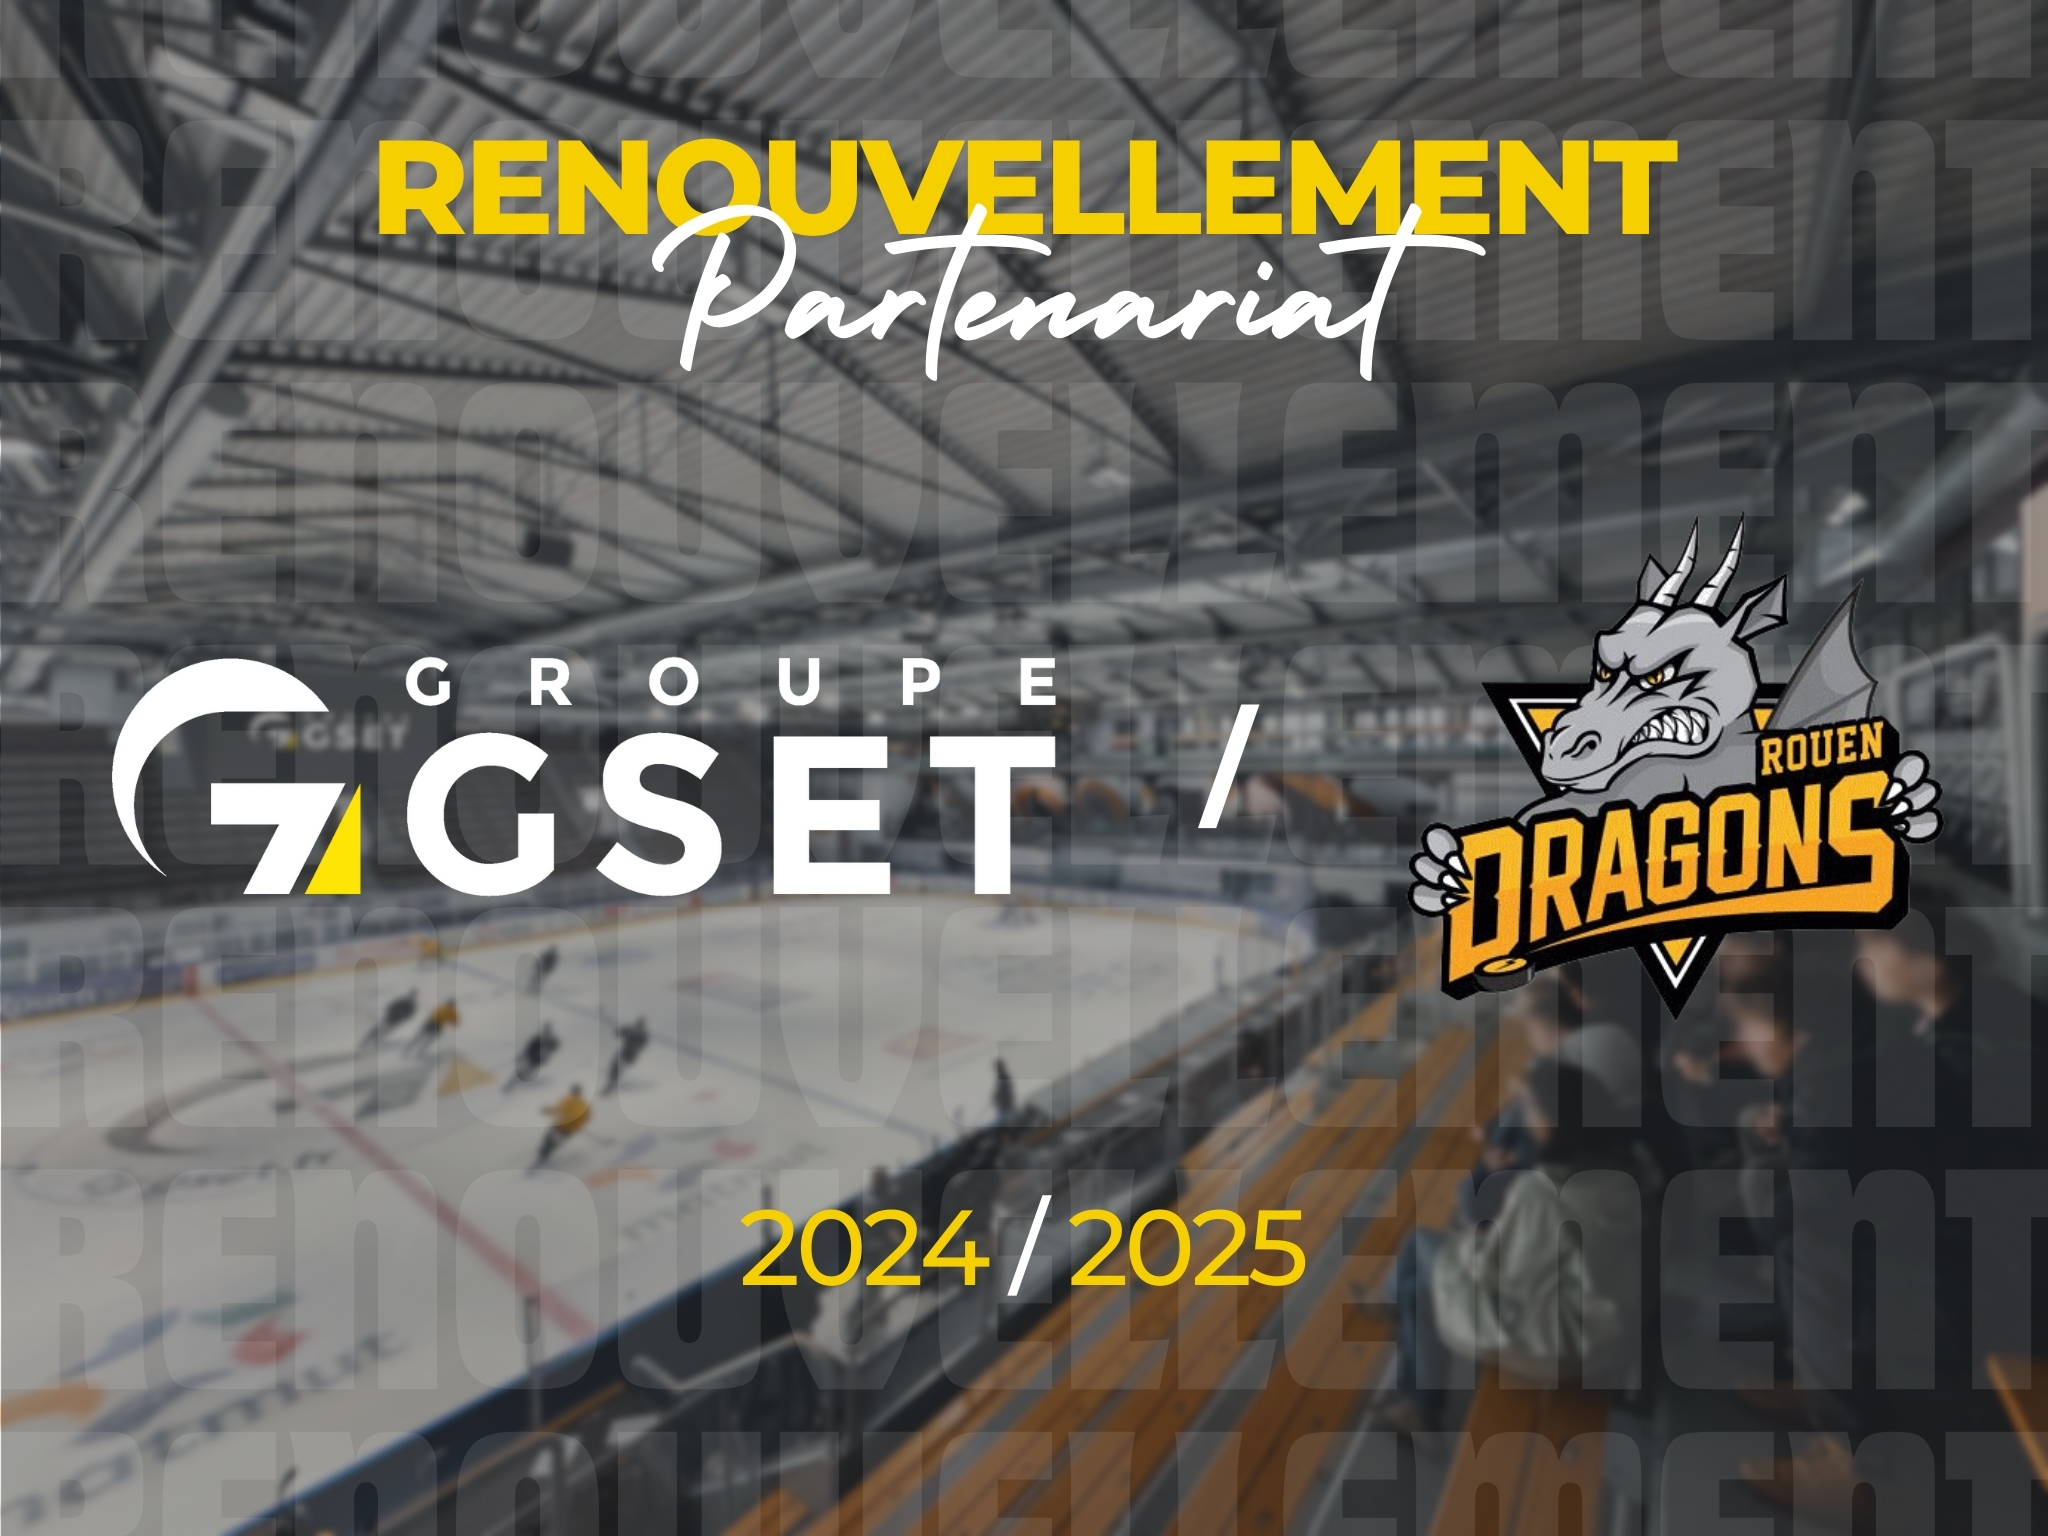 Annonce de renouvellement de partenariat entre Groupe GSET et les Dragons de Rouen pour la saison 2024/2025. L'image montre une patinoire en arrière-plan avec le logo du Groupe GSET à gauche et le logo des Dragons de Rouen à droite. Le texte "RENOUVELLEMENT Partenariat" est affiché en haut, et "2024 / 2025" en bas.